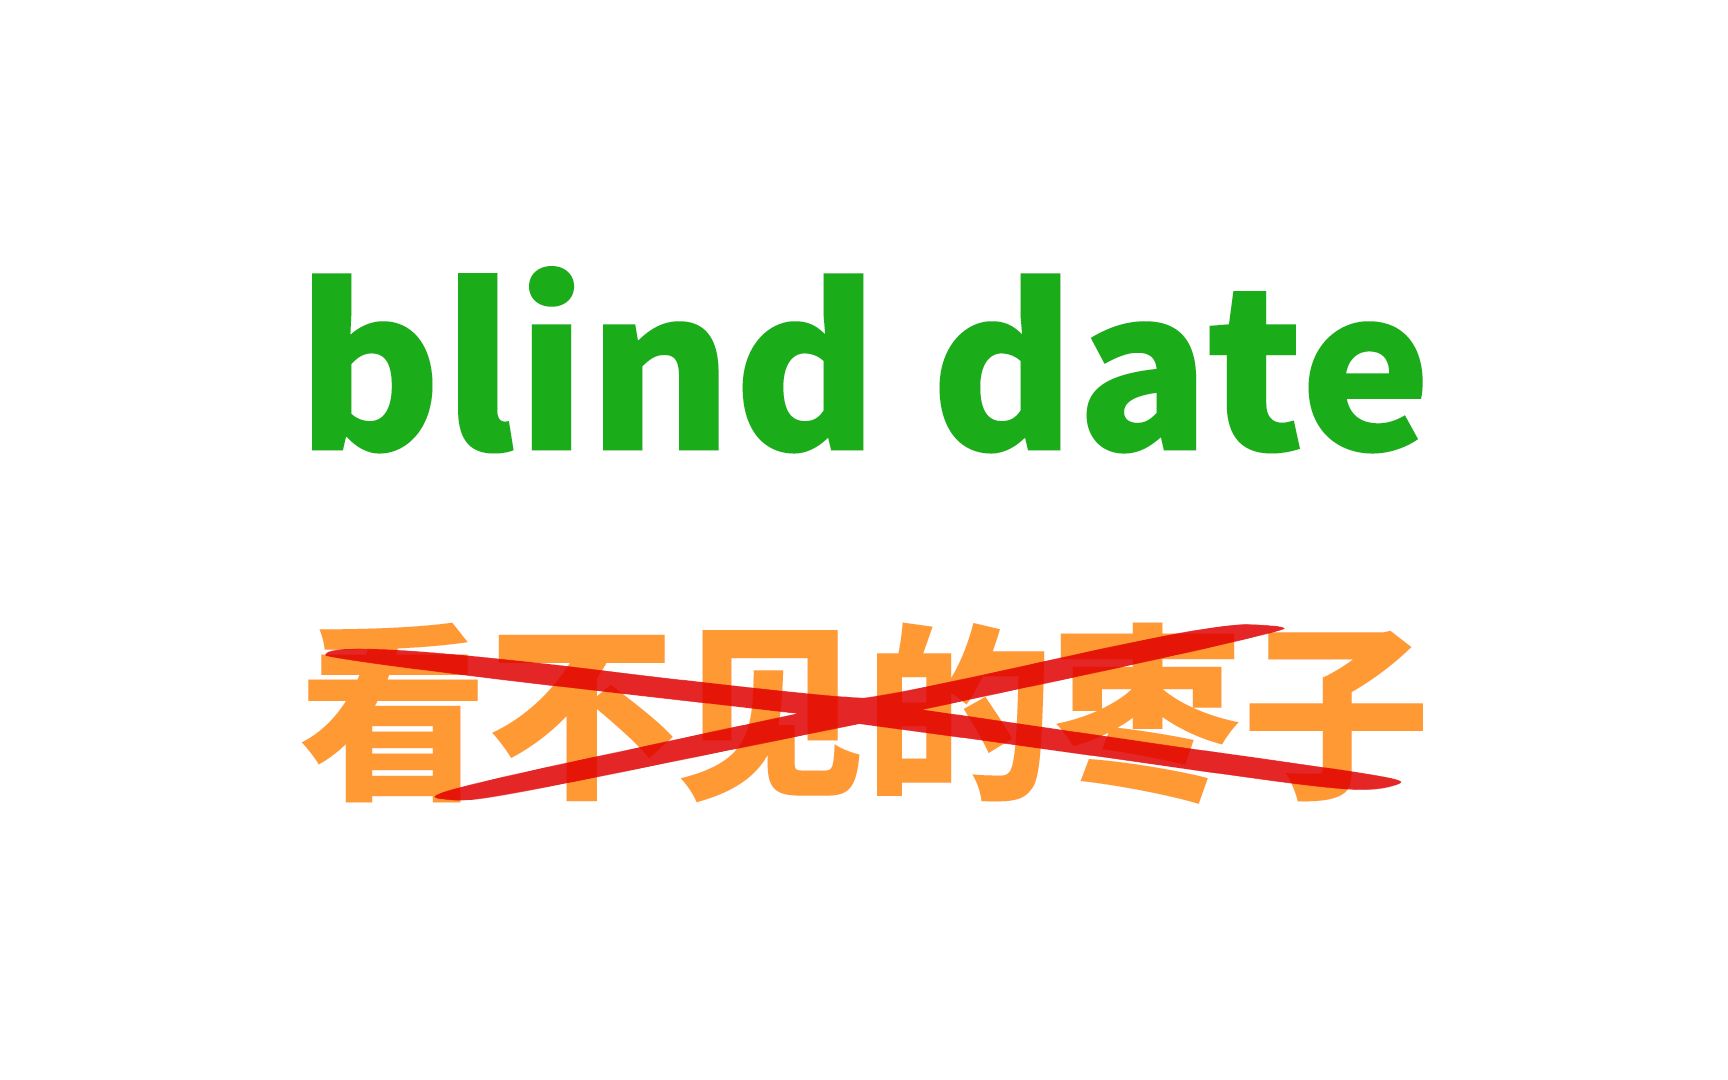 你能猜到blind date是啥意思吗？